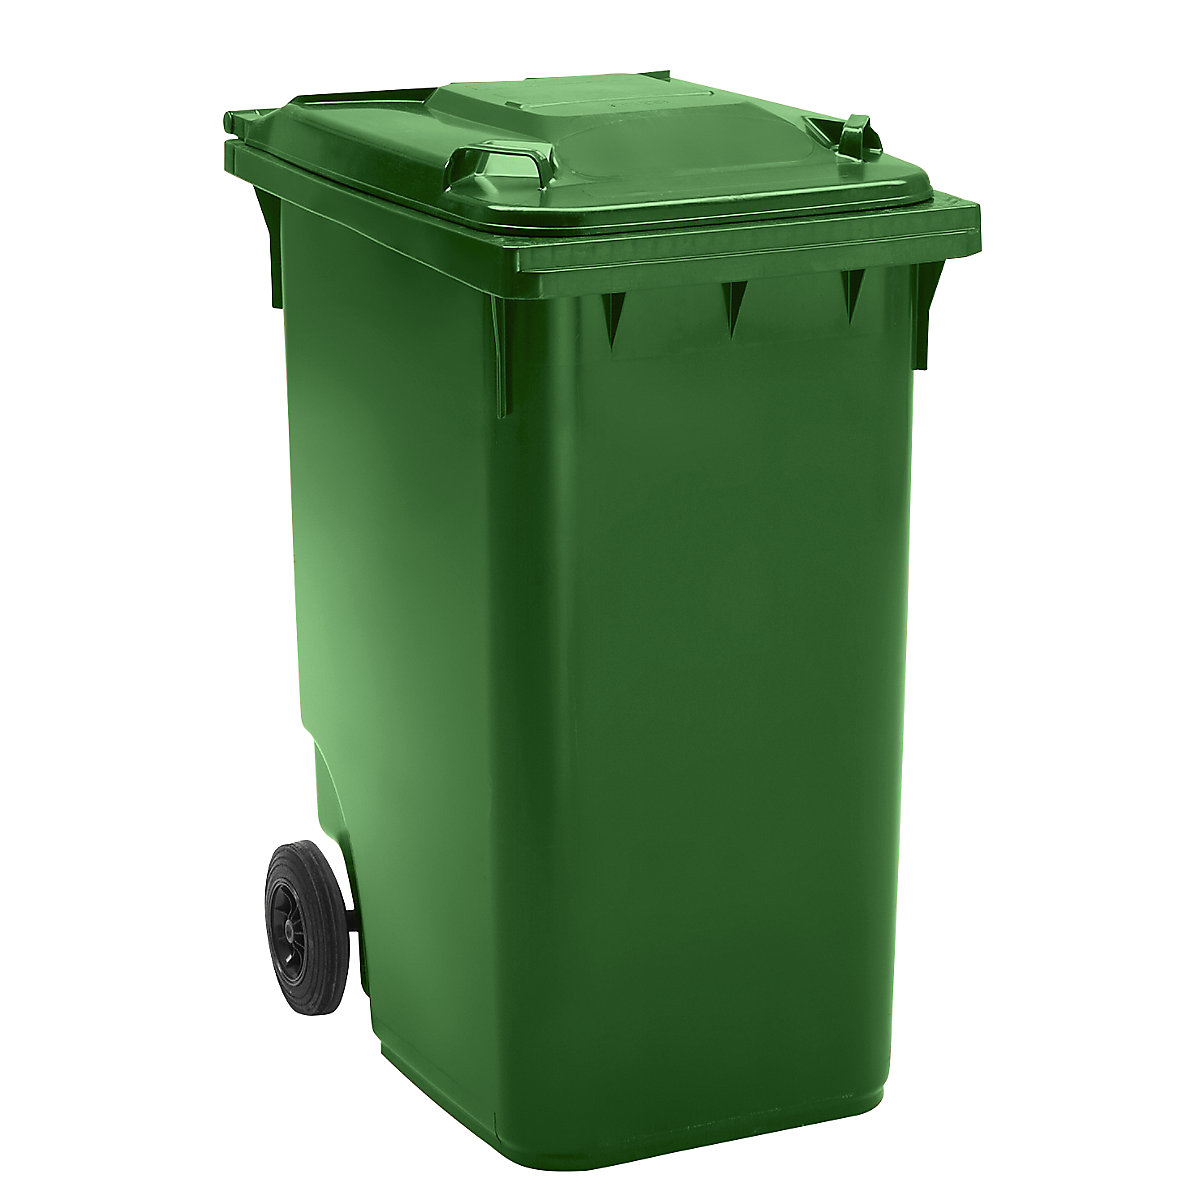 Pojemnik na odpady, z tworzywa, DIN EN 840, poj. 360 l, wys. x szer. x głęb. 665 x 1115 x 880 mm, Ø kółka 200 mm, zielone, dostawa od 5 szt.-9